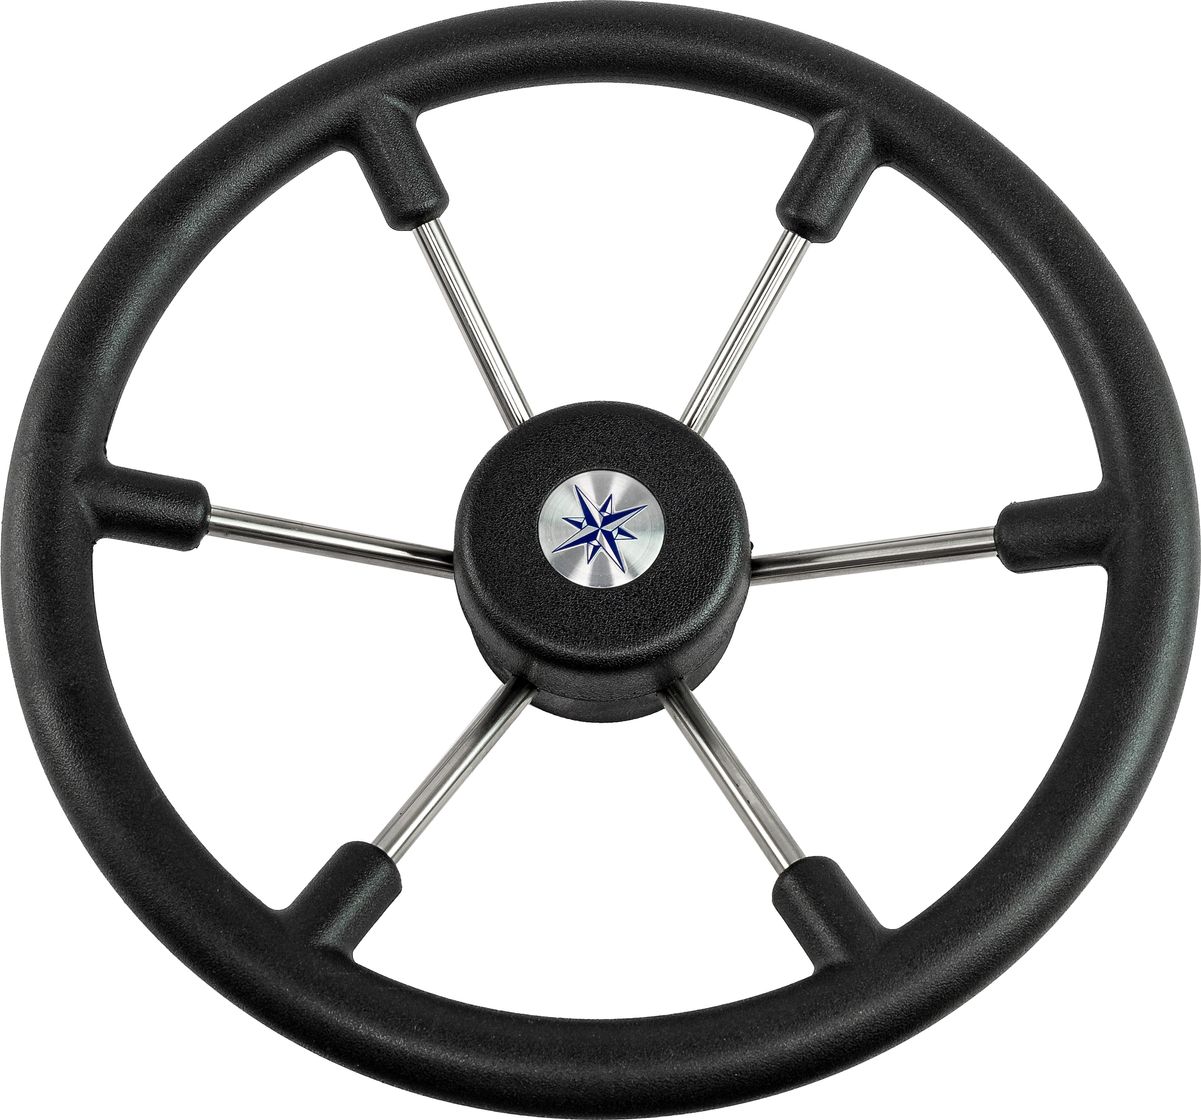 Рулевое колесо LEADER TANEGUM черный обод серебряные спицы д. 360 мм VN7360-01 рулевое колесо leader tanegum обод серебряные спицы д 400 мм vn7400 01